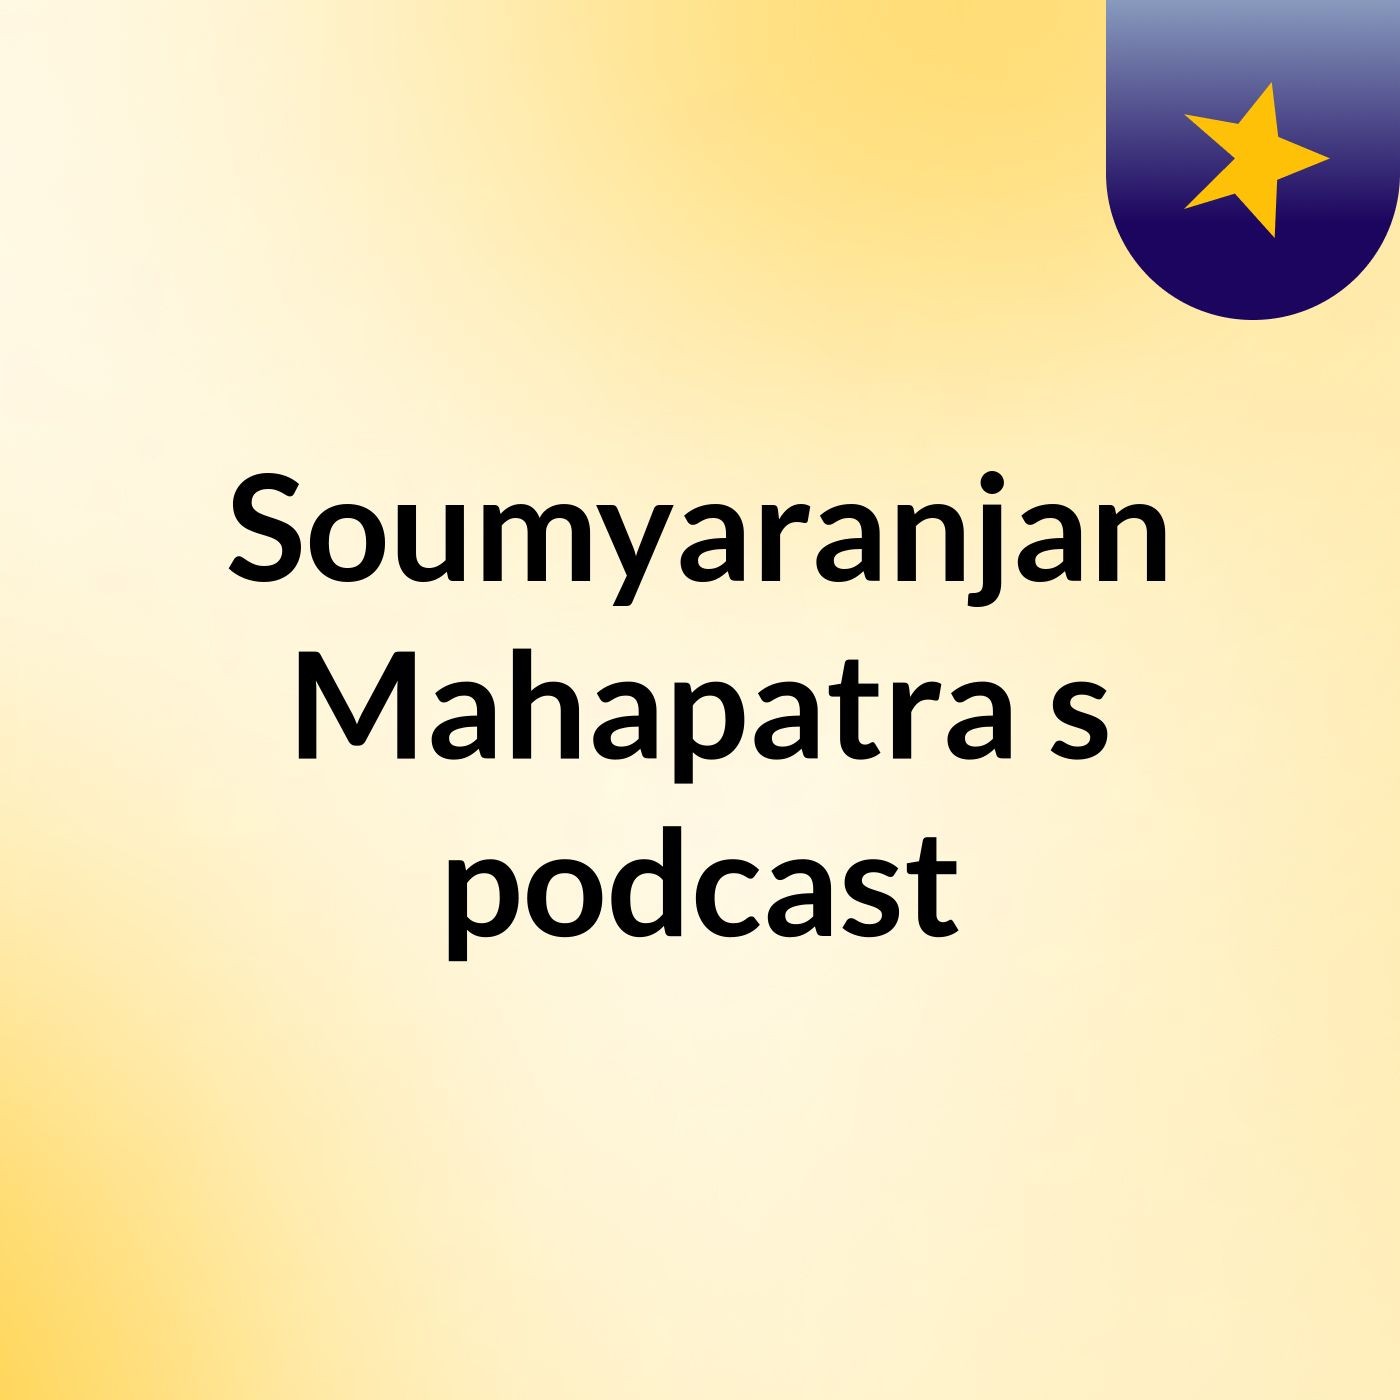 Soumyaranjan Mahapatra's podcast